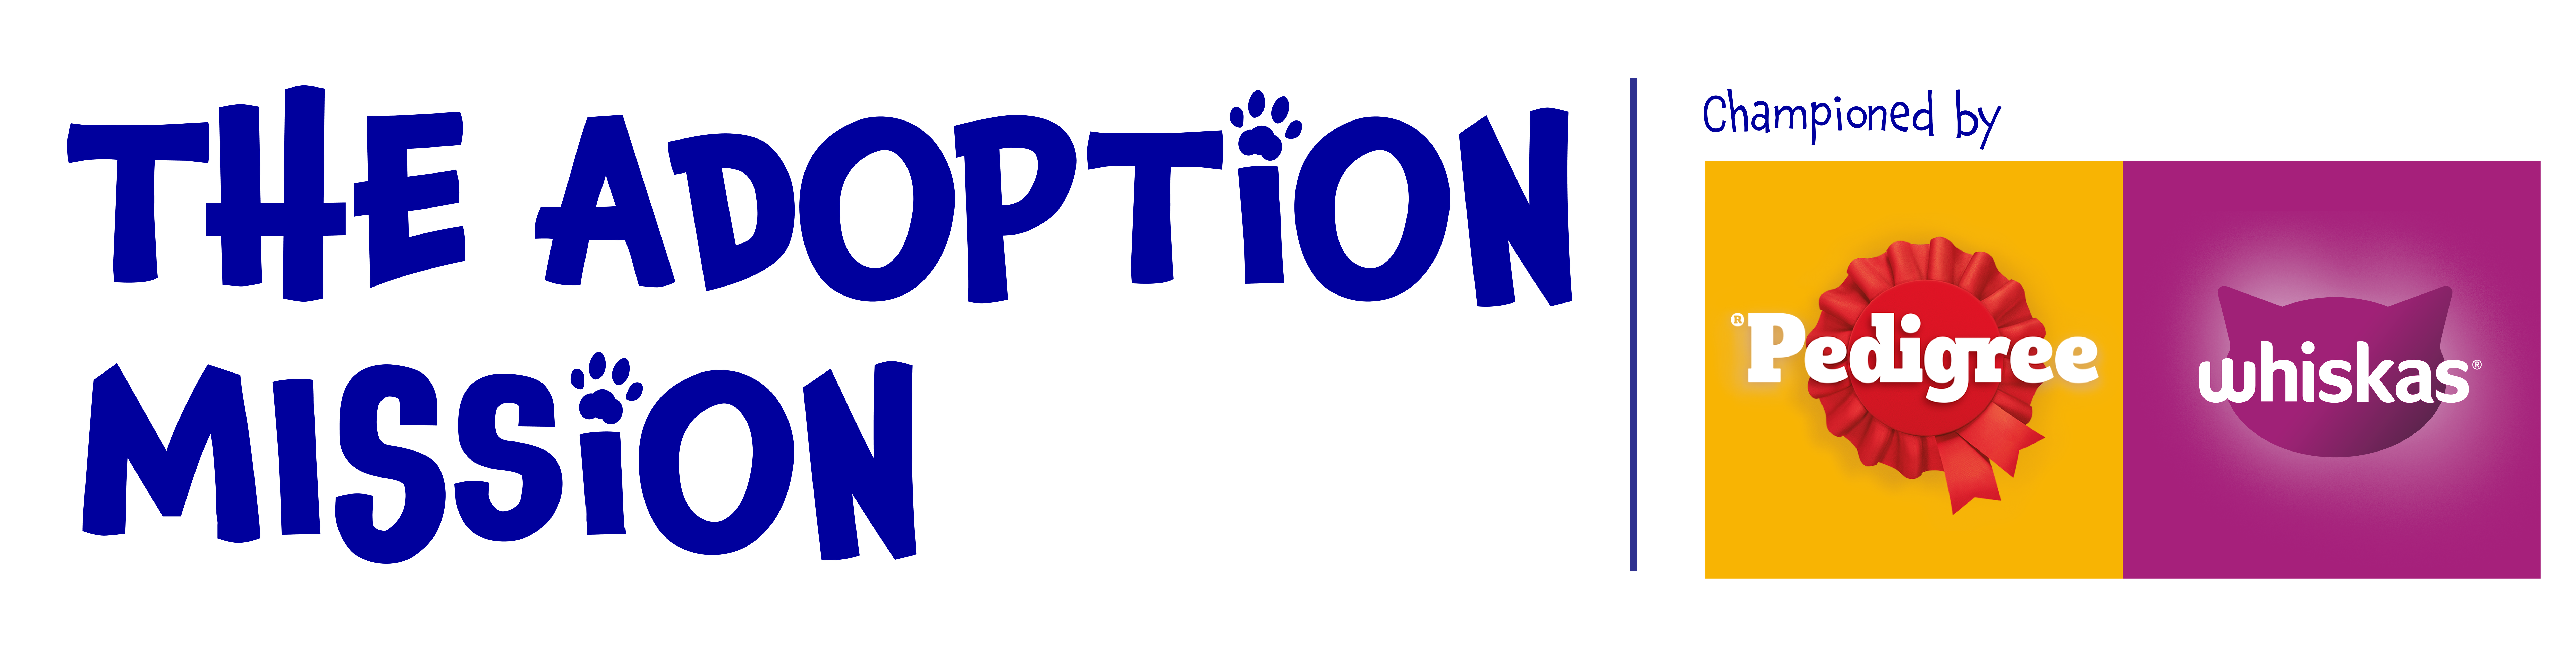 Petadoption Logo